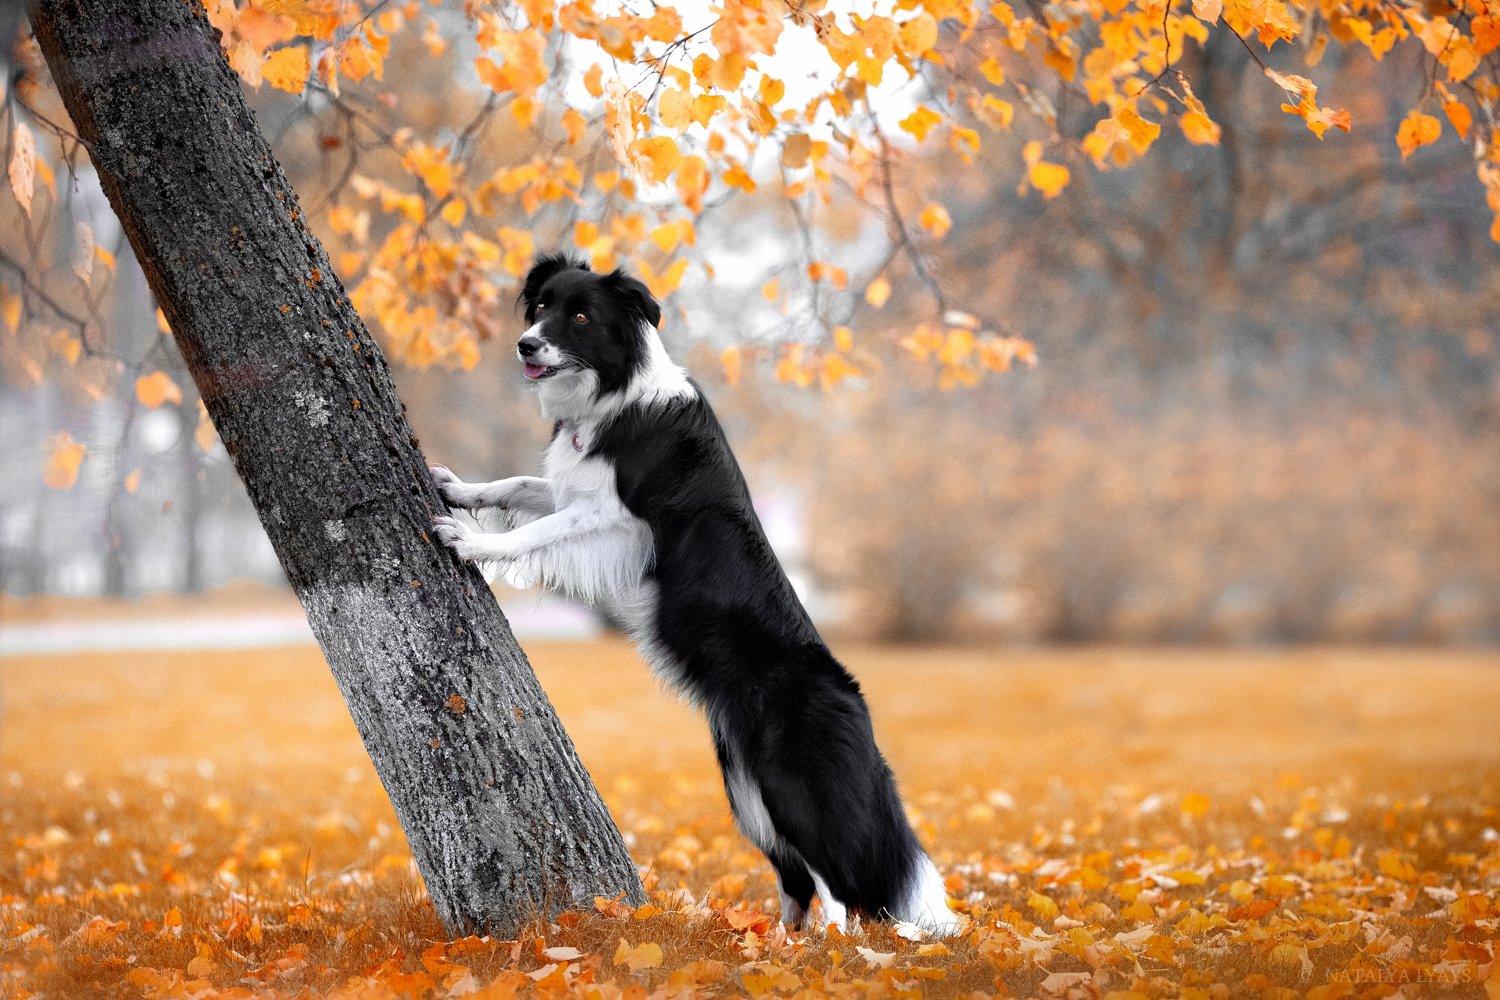 собака,фото дня,питомец, животные, осень, природа, pet, no people,autumn, canon,animal, Наталья Ляйс